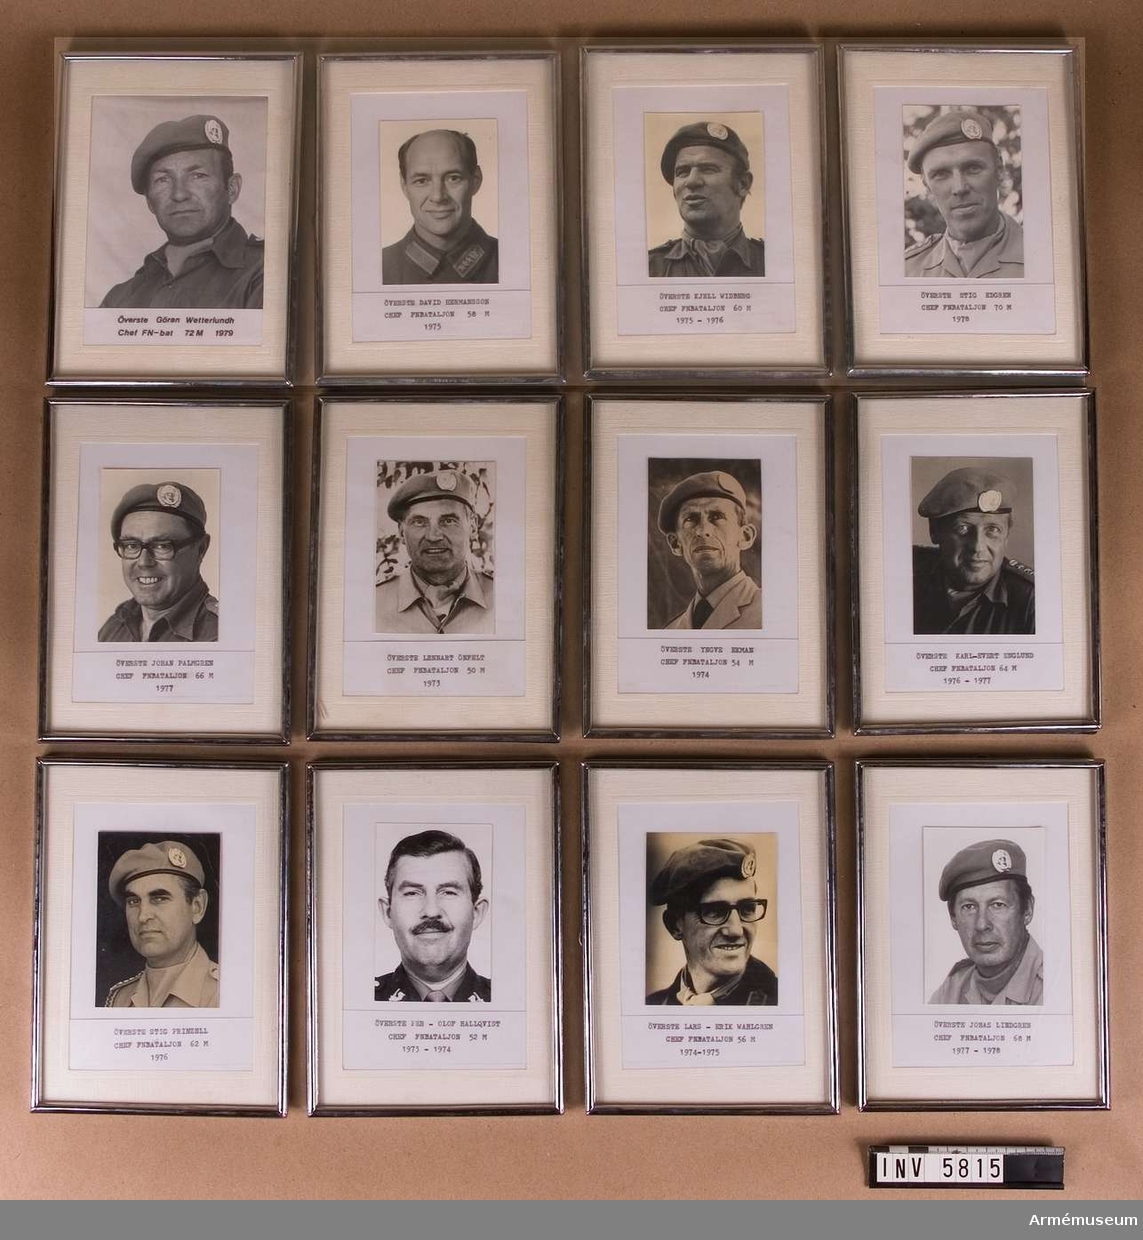 Ramade. Mått: 130 x 180 mm. 12 inramade fotografier av bataljonchefer FN 1973-1978.

Samhörande gåva: 5676-5699 + 5800-5827.